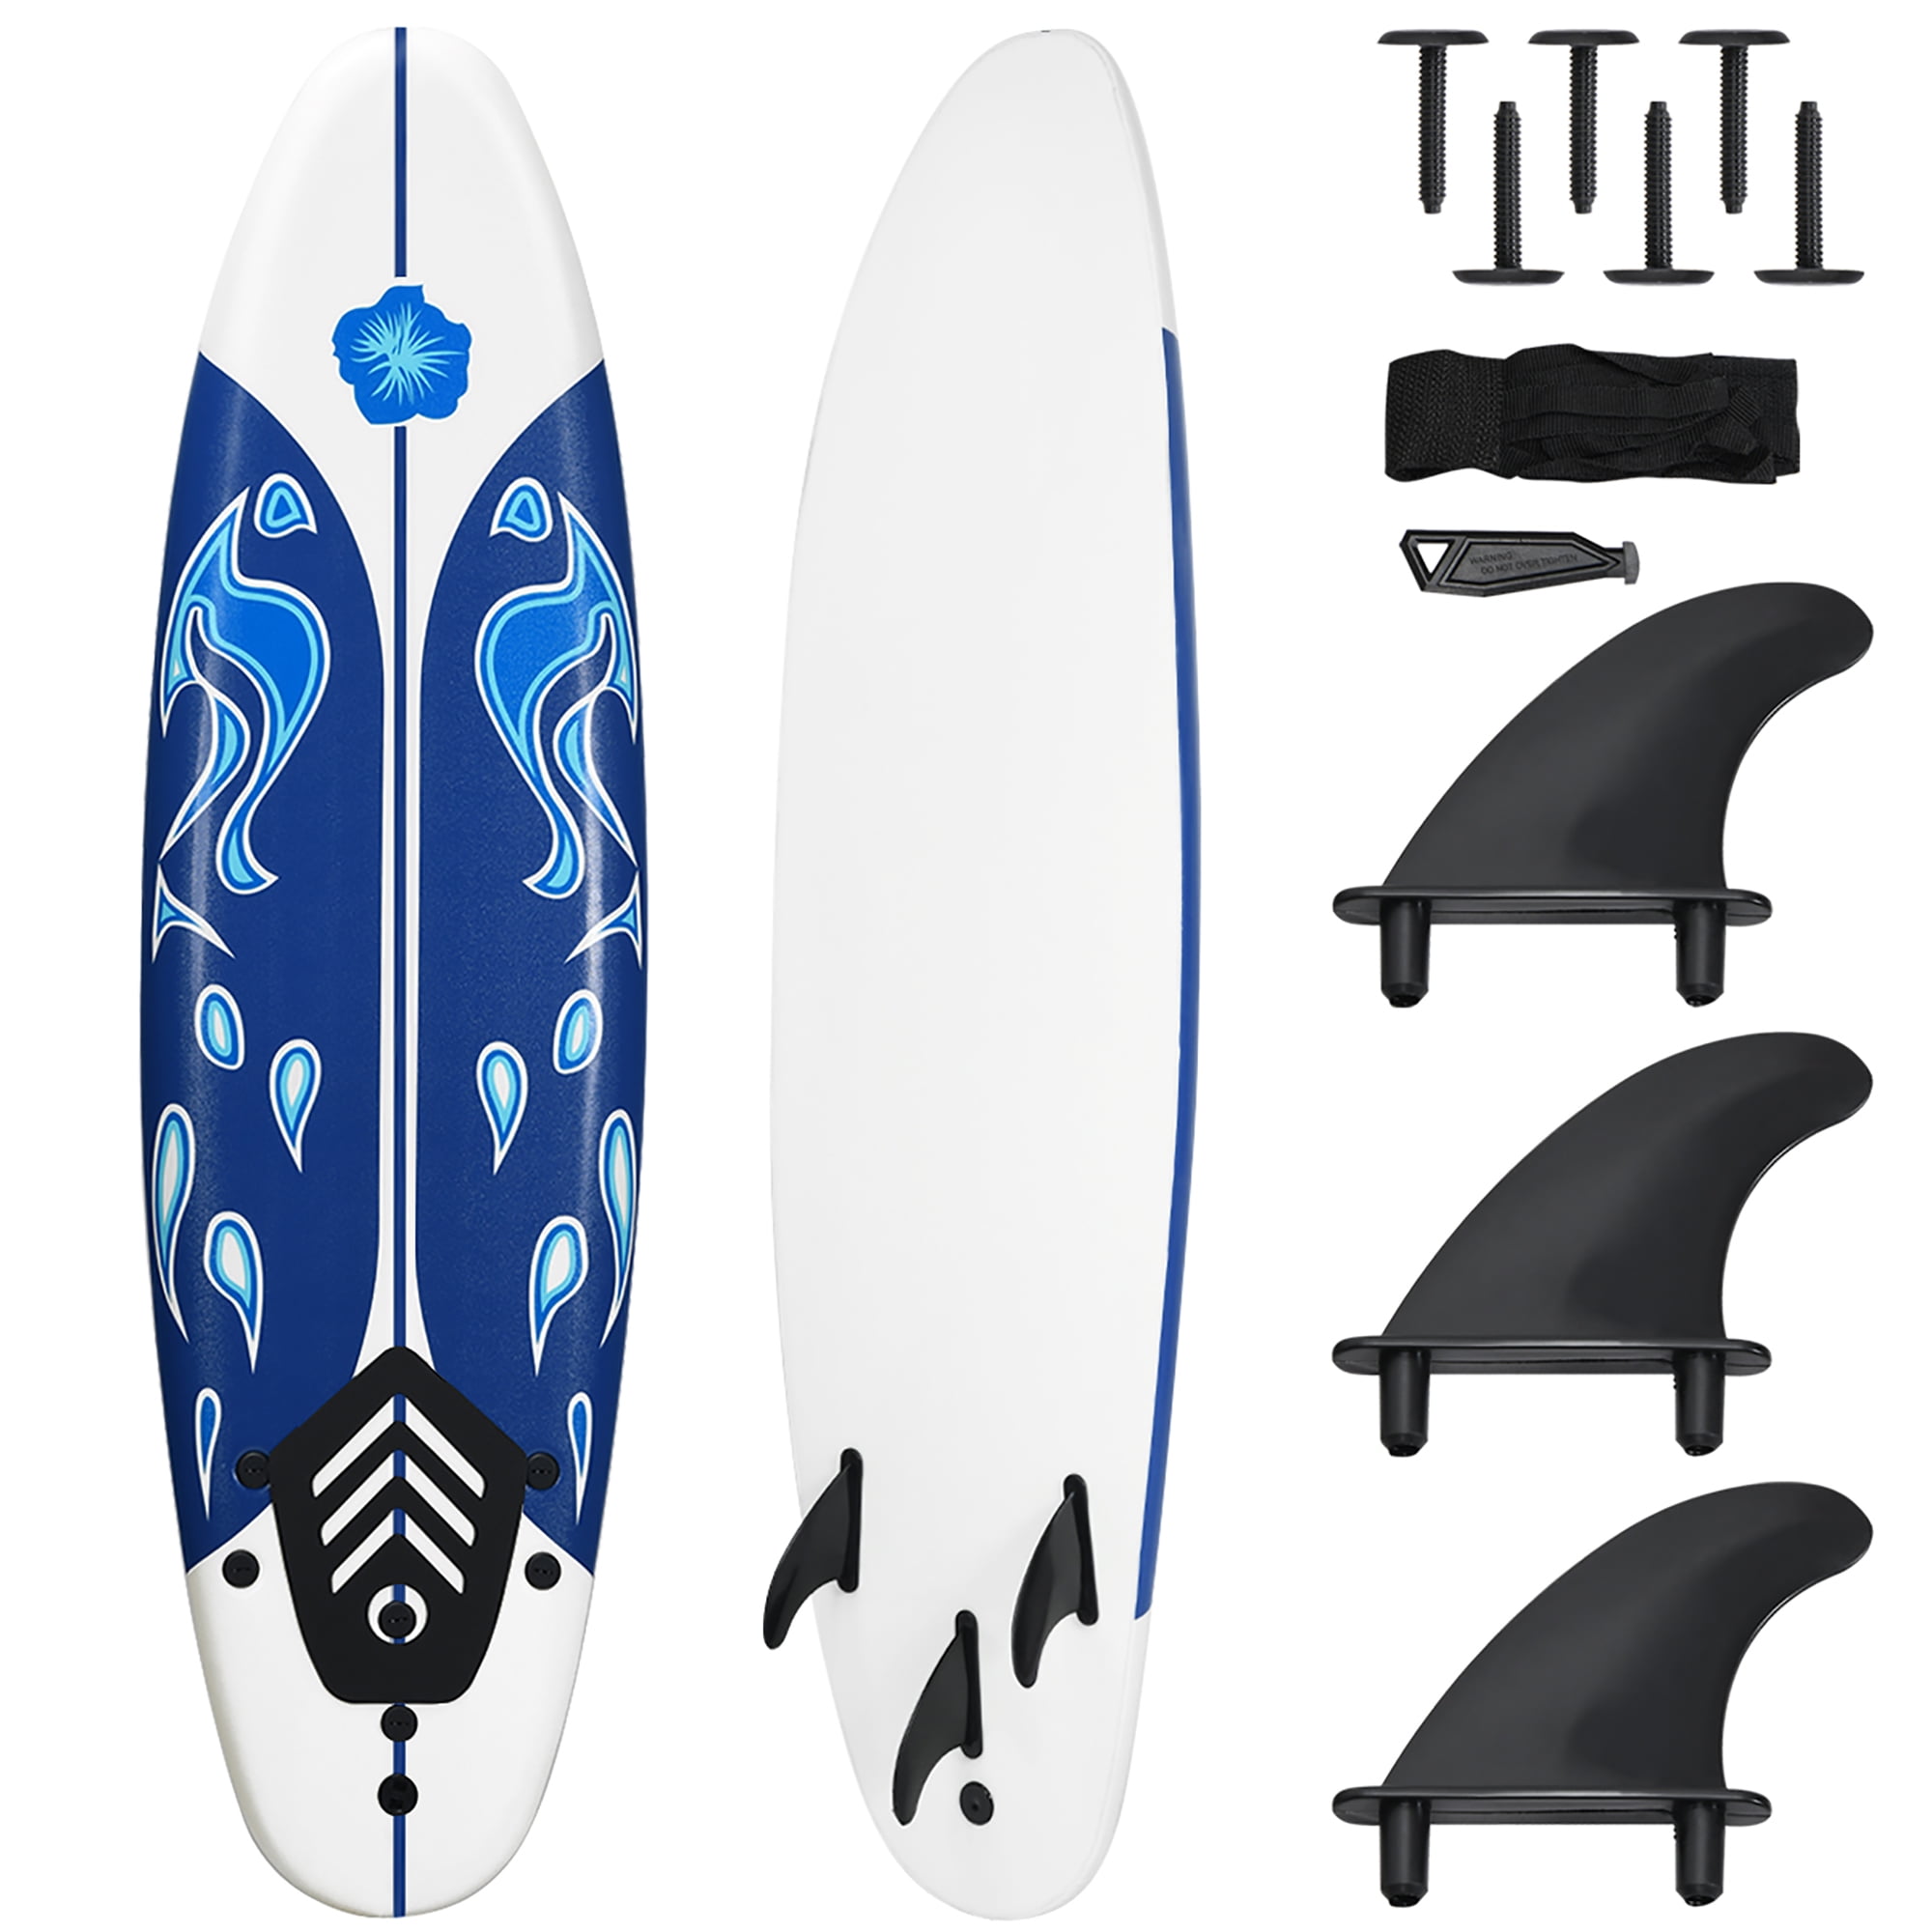 Costway 6' Surfboard Foamie Body Surfing Board W/3  Fins & Leash for Kids Adults White